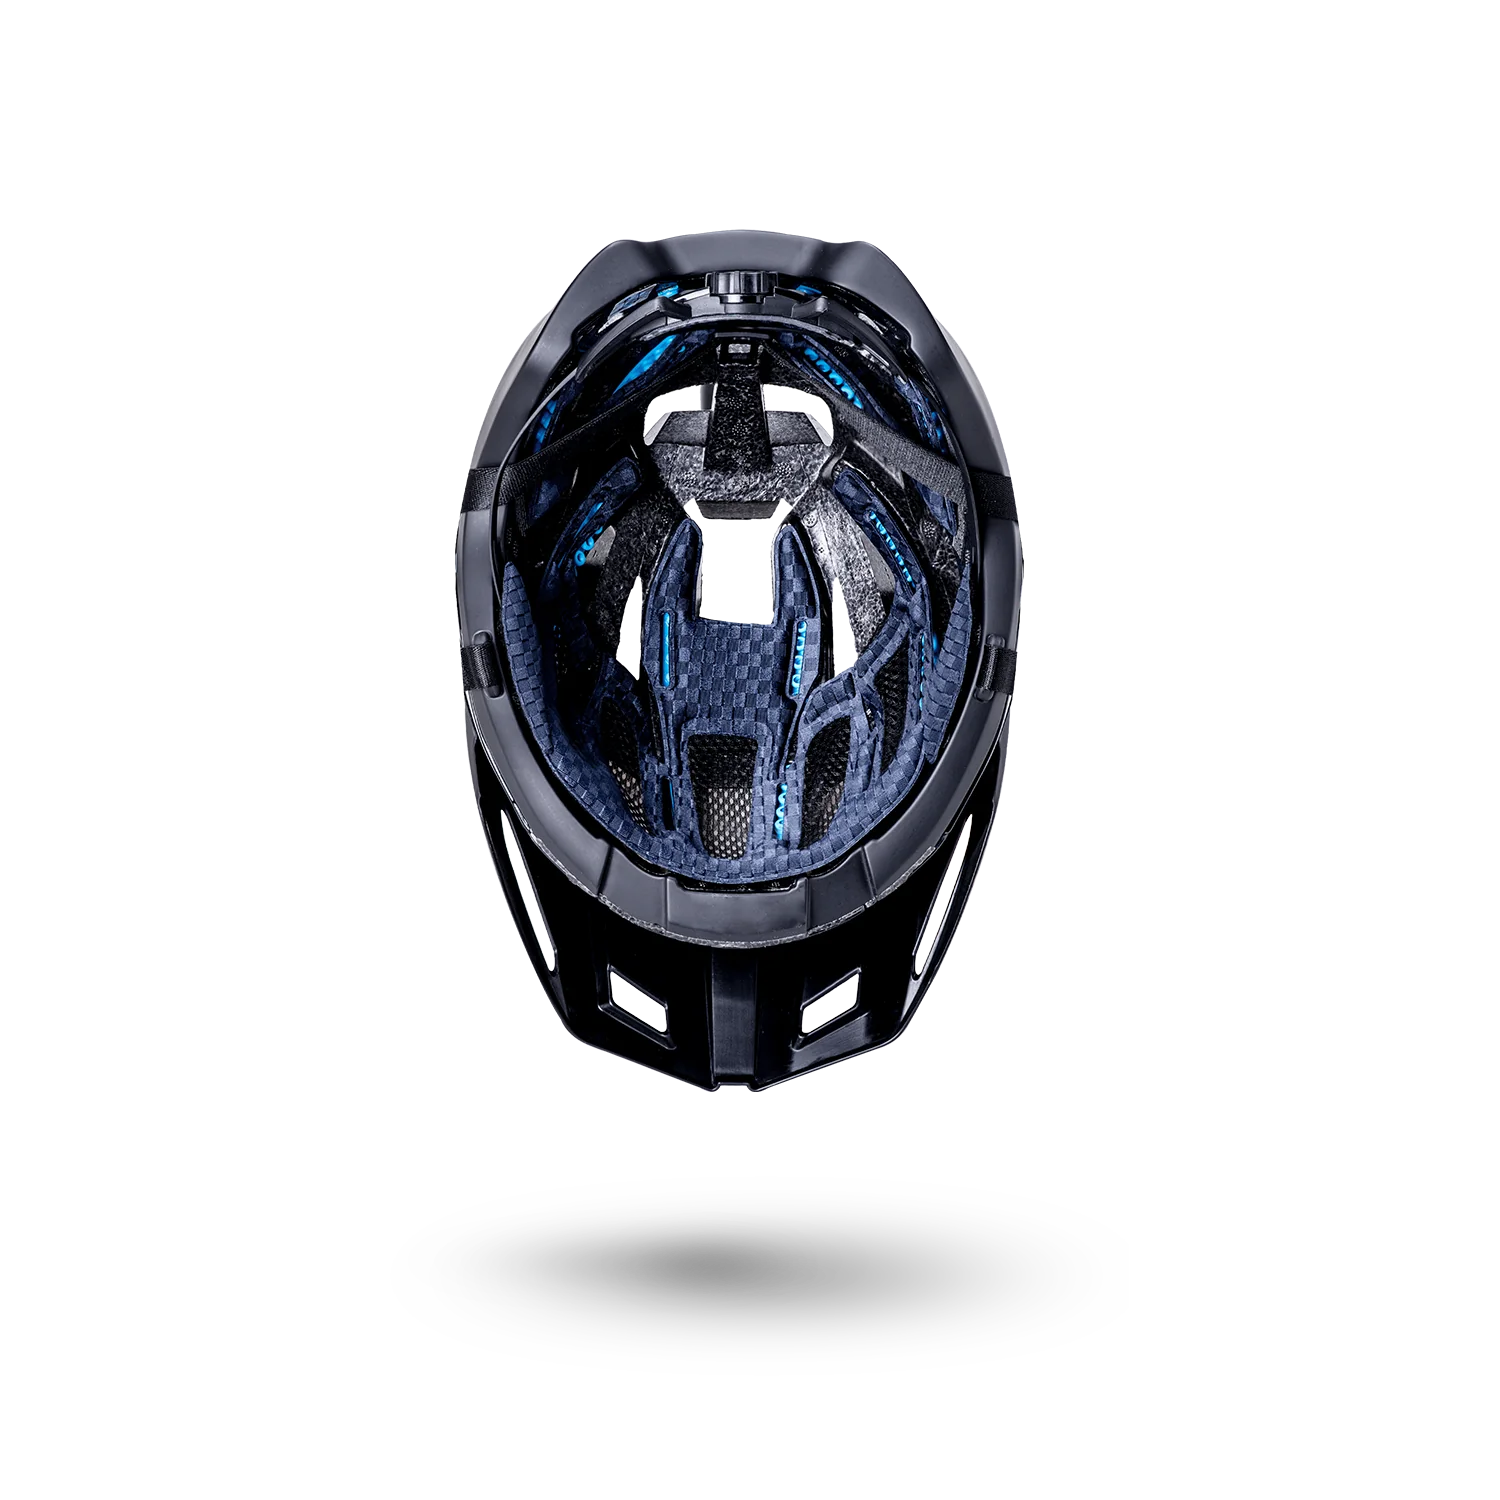 Kali Interceptor 2.0 Solid Matte / Gloss Black Bicycle Helmet